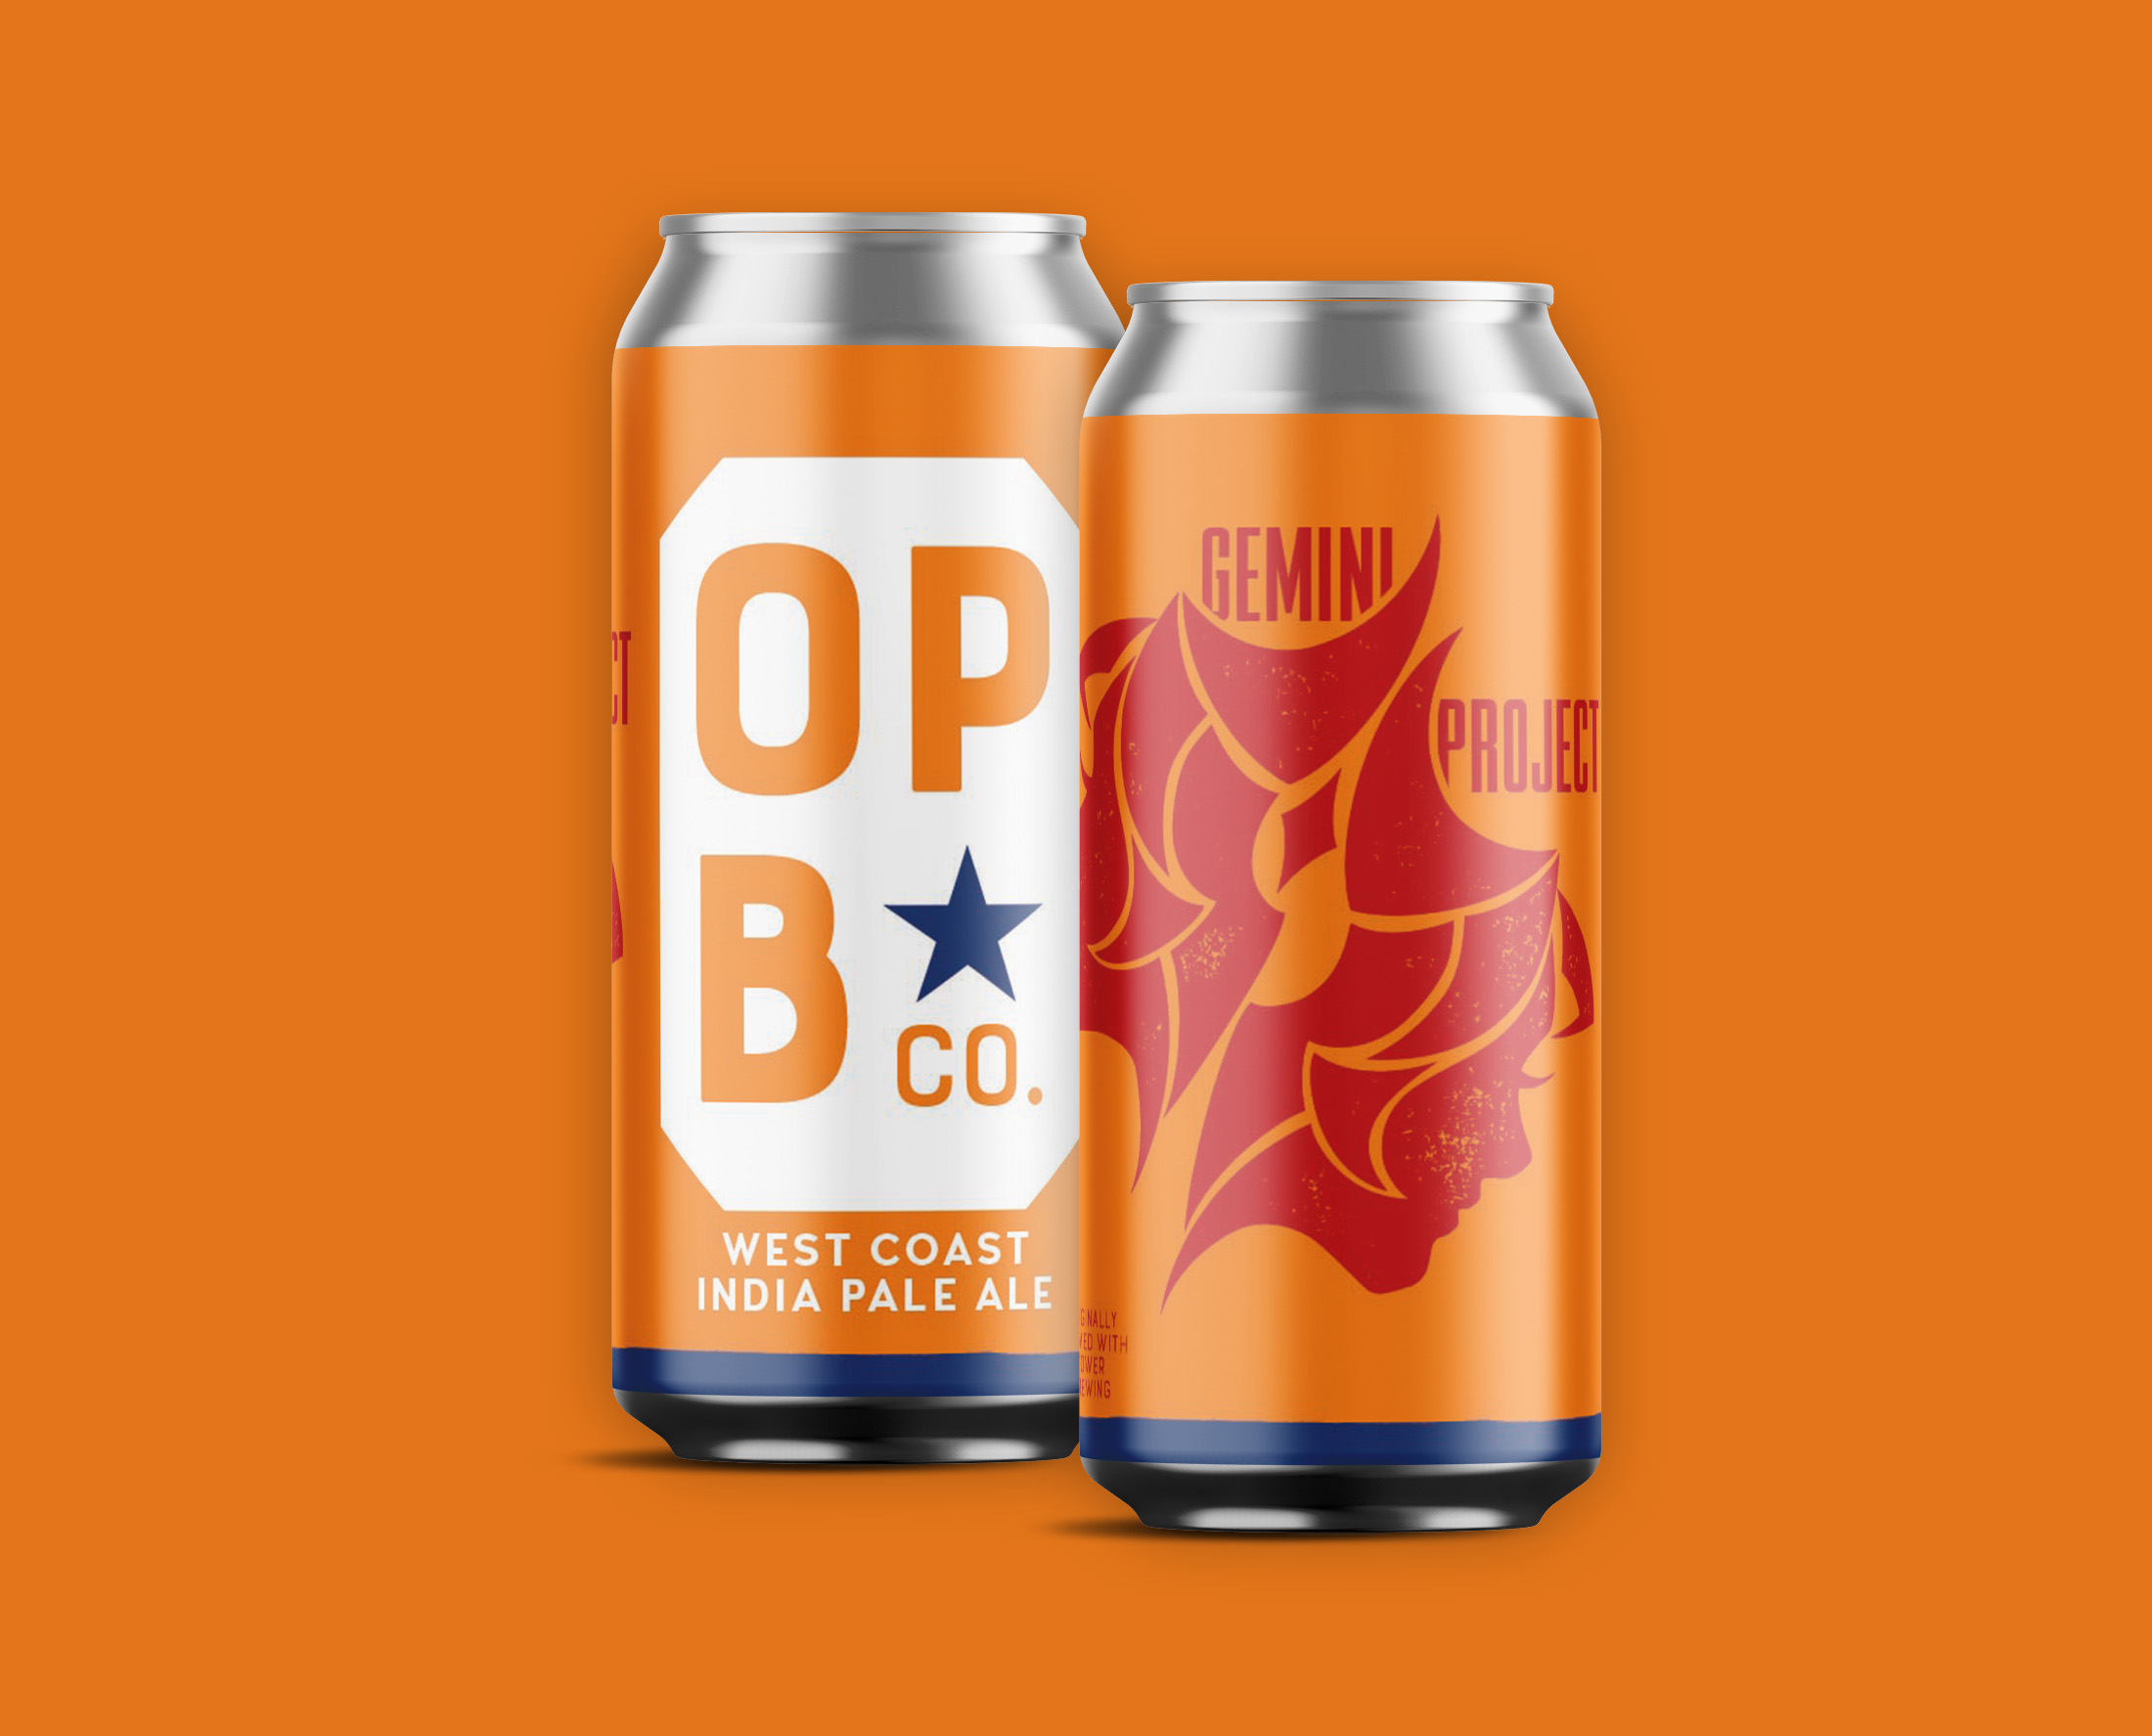 Digital rendering of Gemini project west coast IPA beer. 2 cans